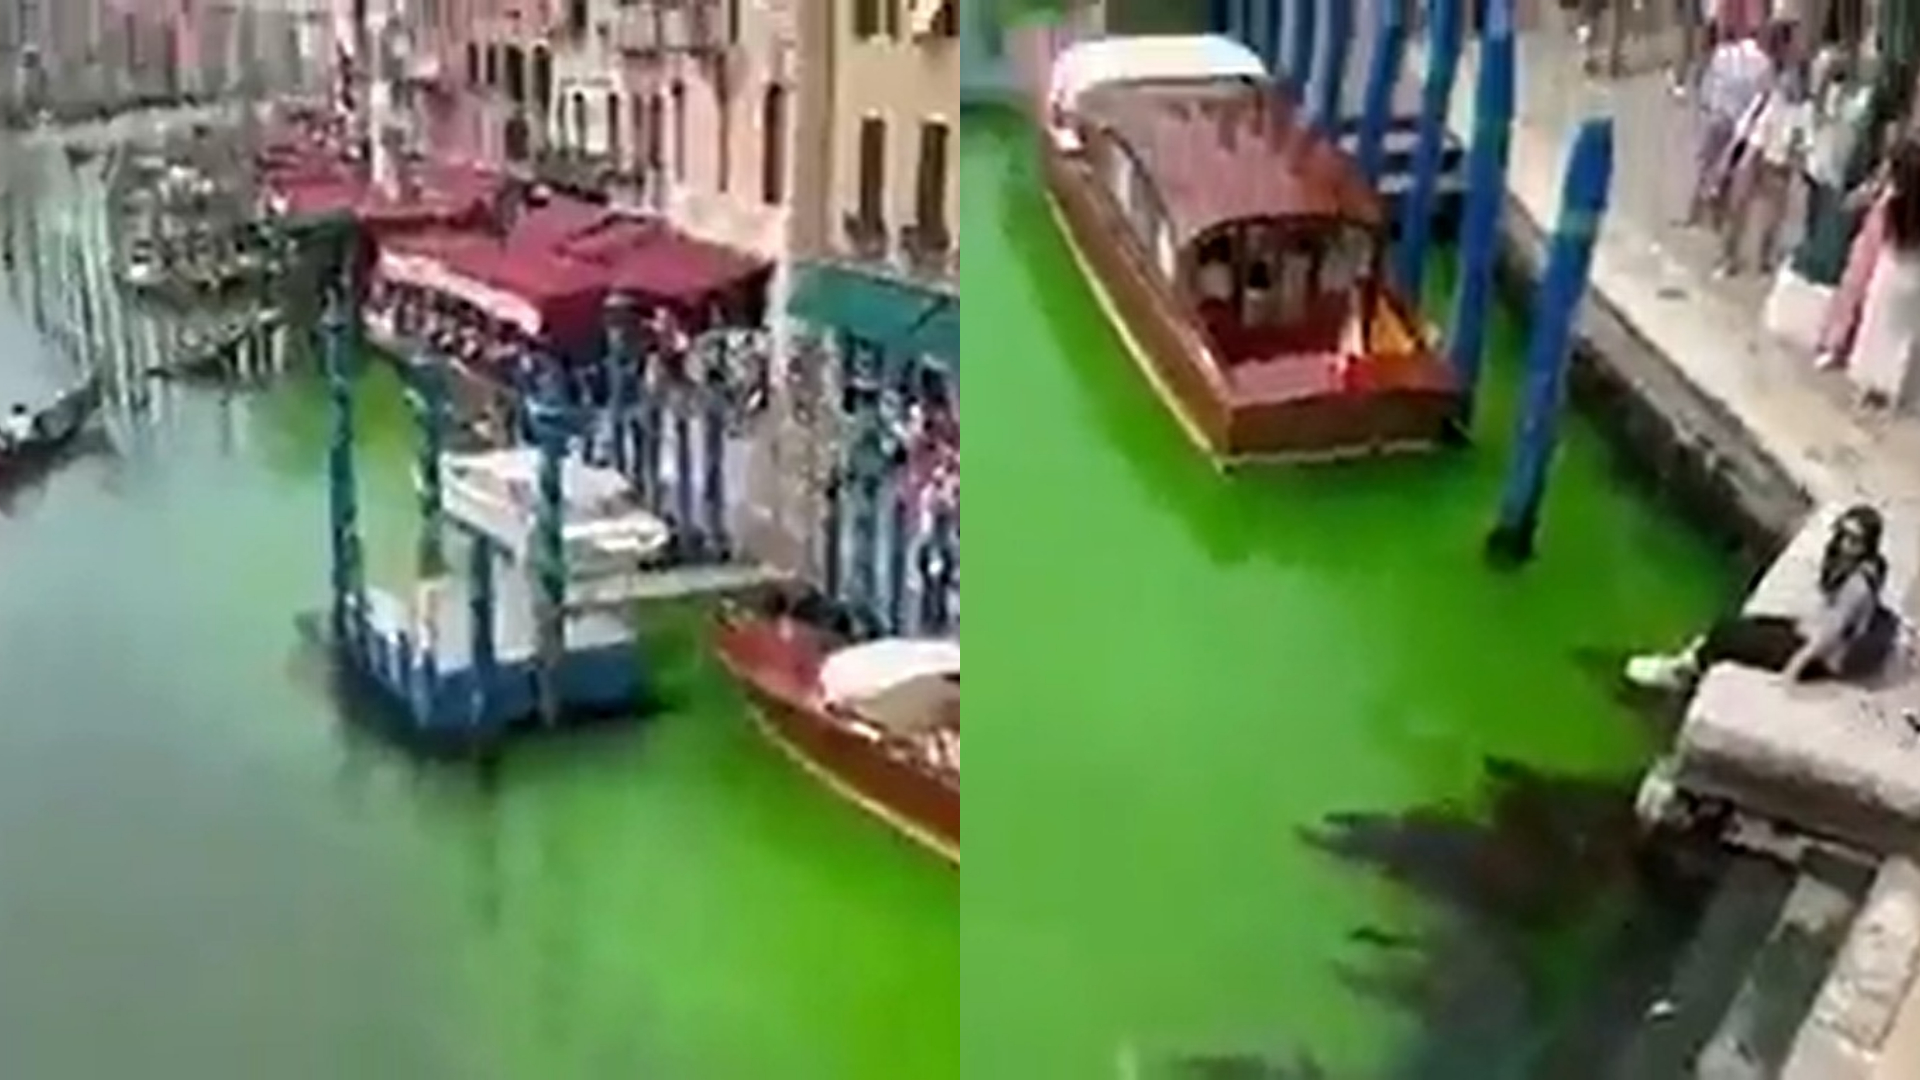 Canal de Veneza amanhece na cor verde fluorescente e prefeito convoca reunião de emergência; veja vídeo